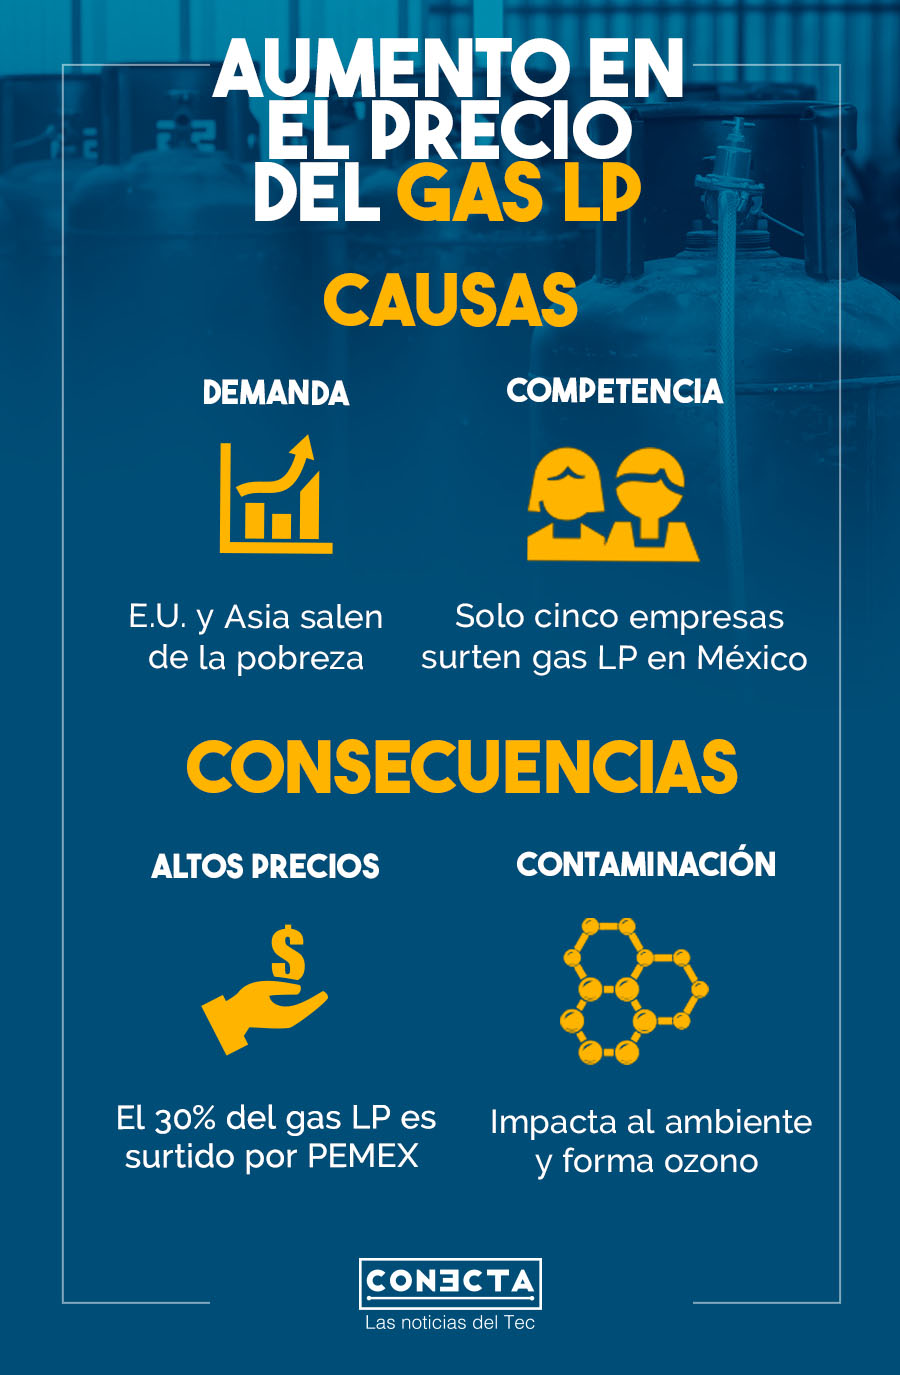 Infografía sobre causas y consecuencias del aumento en el precio del gas LP